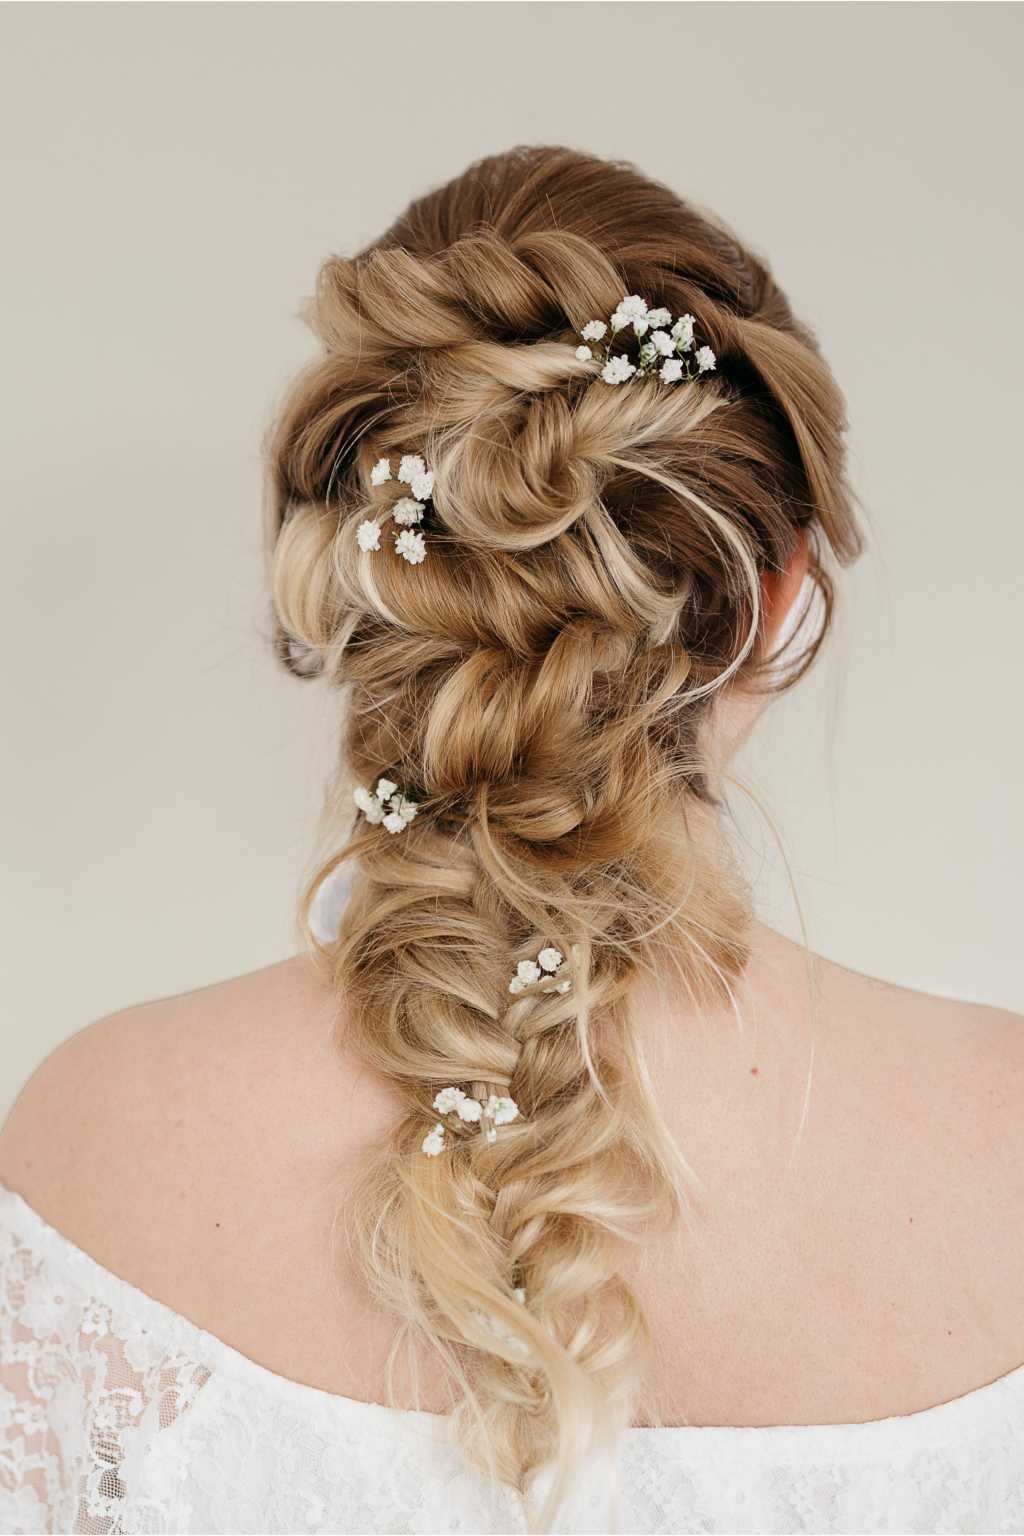 Косы на средние волосы − 7 красивых вариантов женских причесок с фото